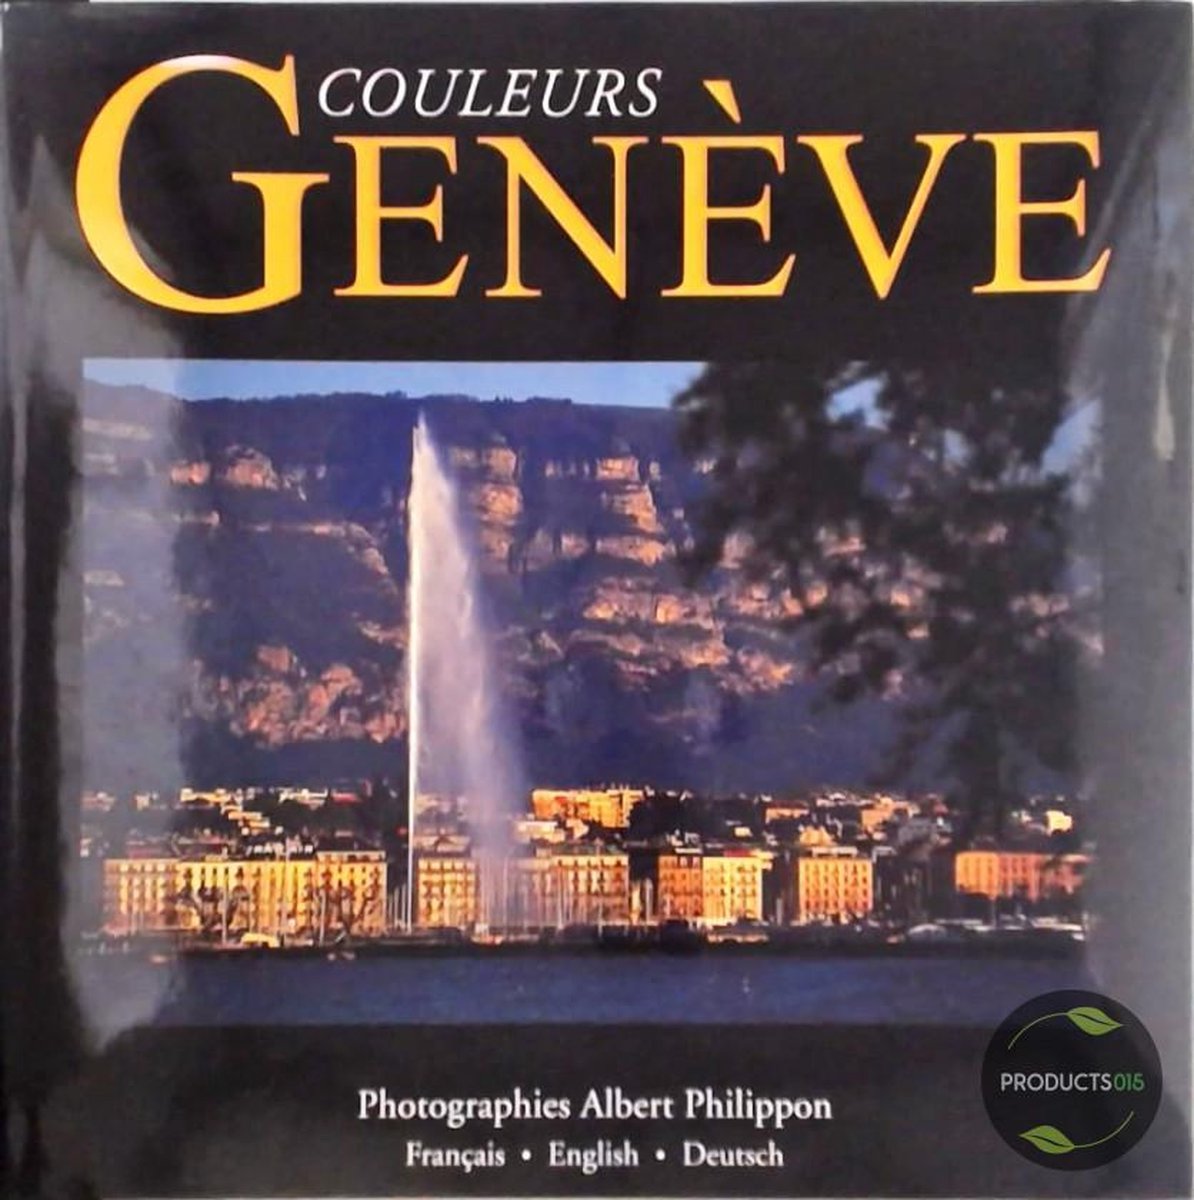 Couleurs Genéve (Francais-English-Deutsch)